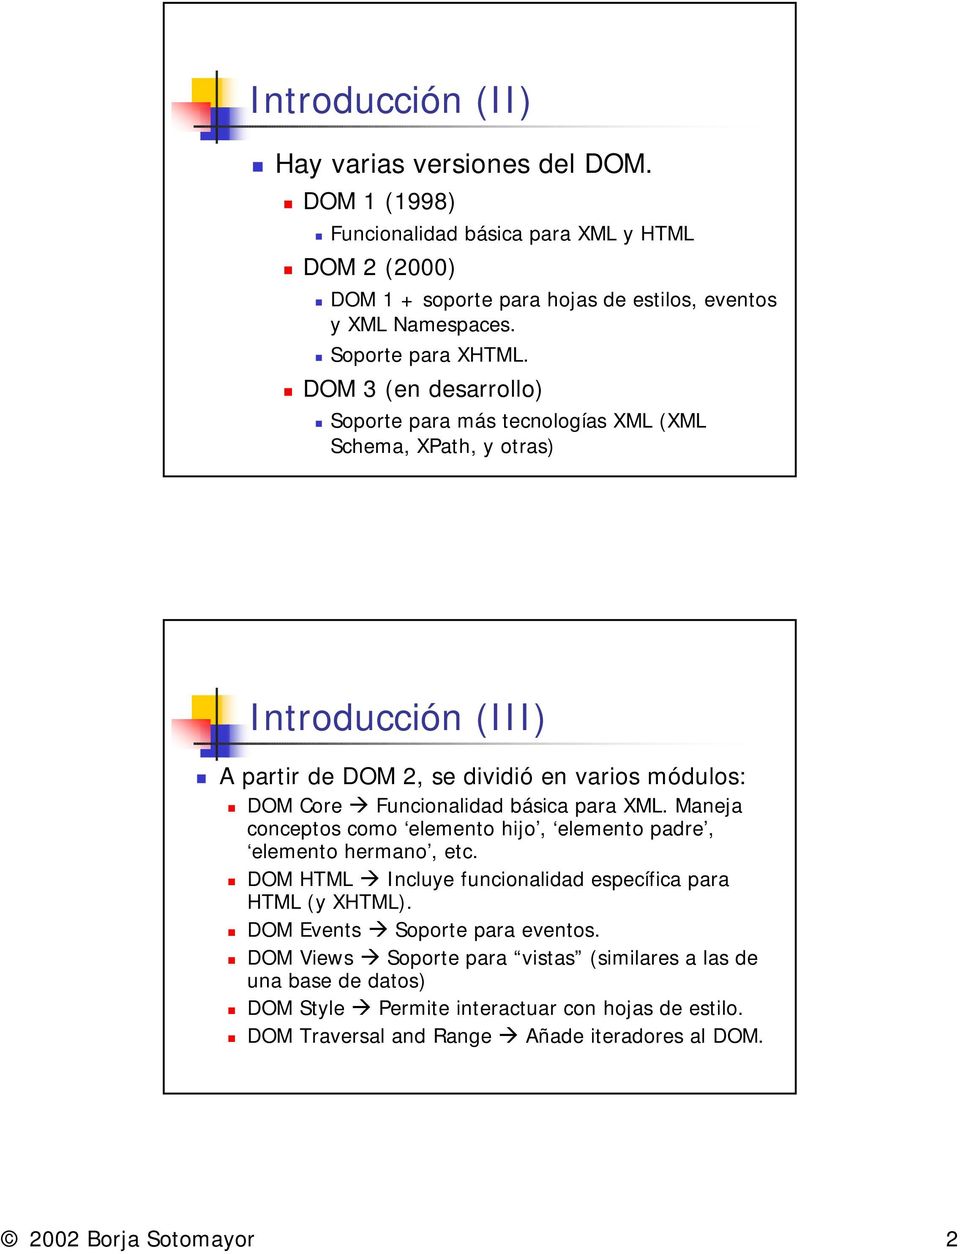 DOM Core " Funcionalidad básica para XML. Maneja conceptos como elemento hijo, elemento padre, elemento hermano, etc.! DOM HTML " Incluye funcionalidad específica para HTML (y XHTML).